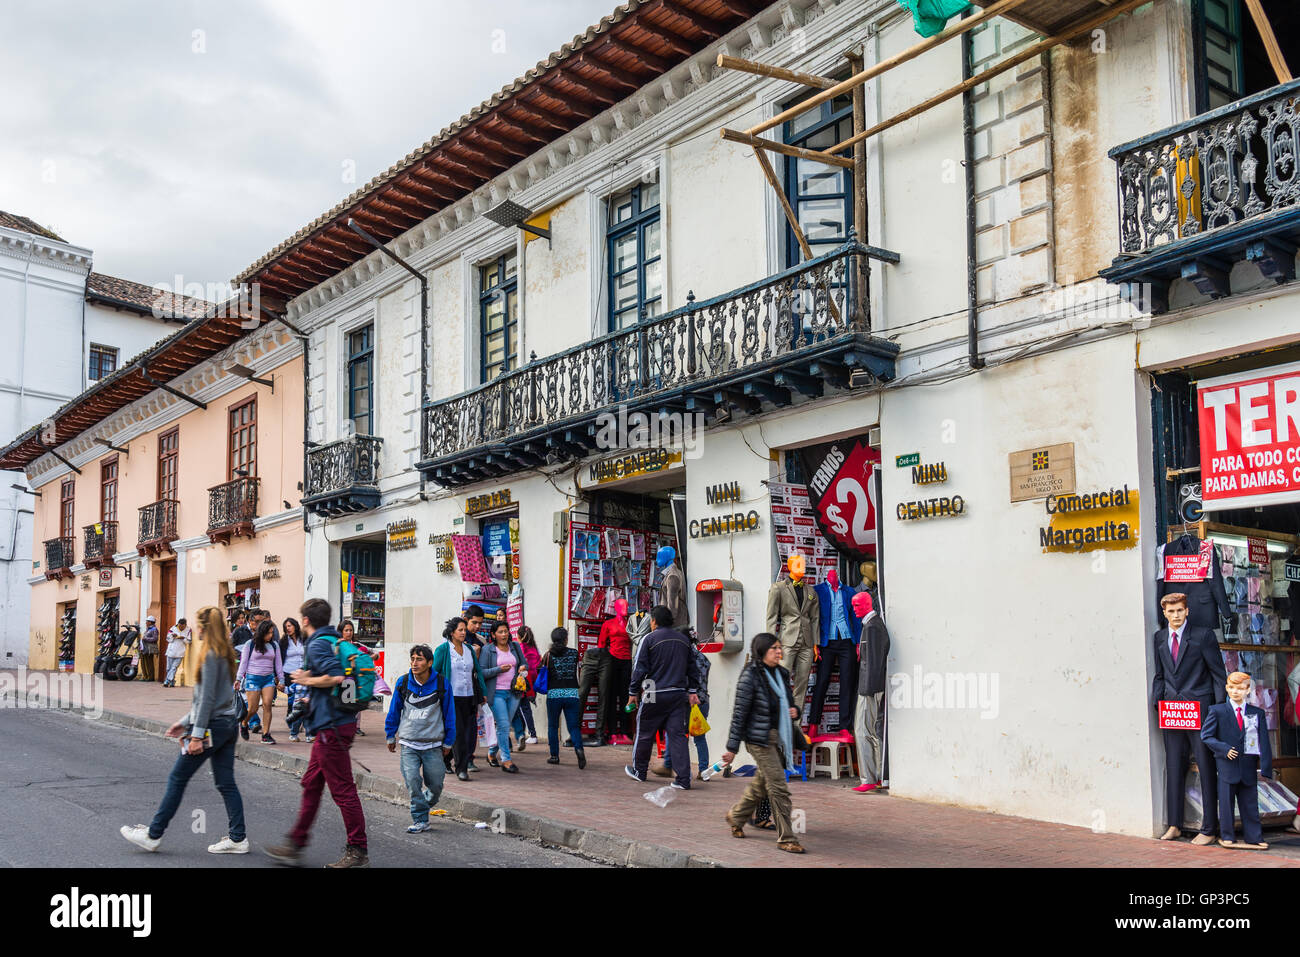 Les touristes et les habitants se mêlent dans la rue de la vieille ville de Quito, en Équateur. Banque D'Images